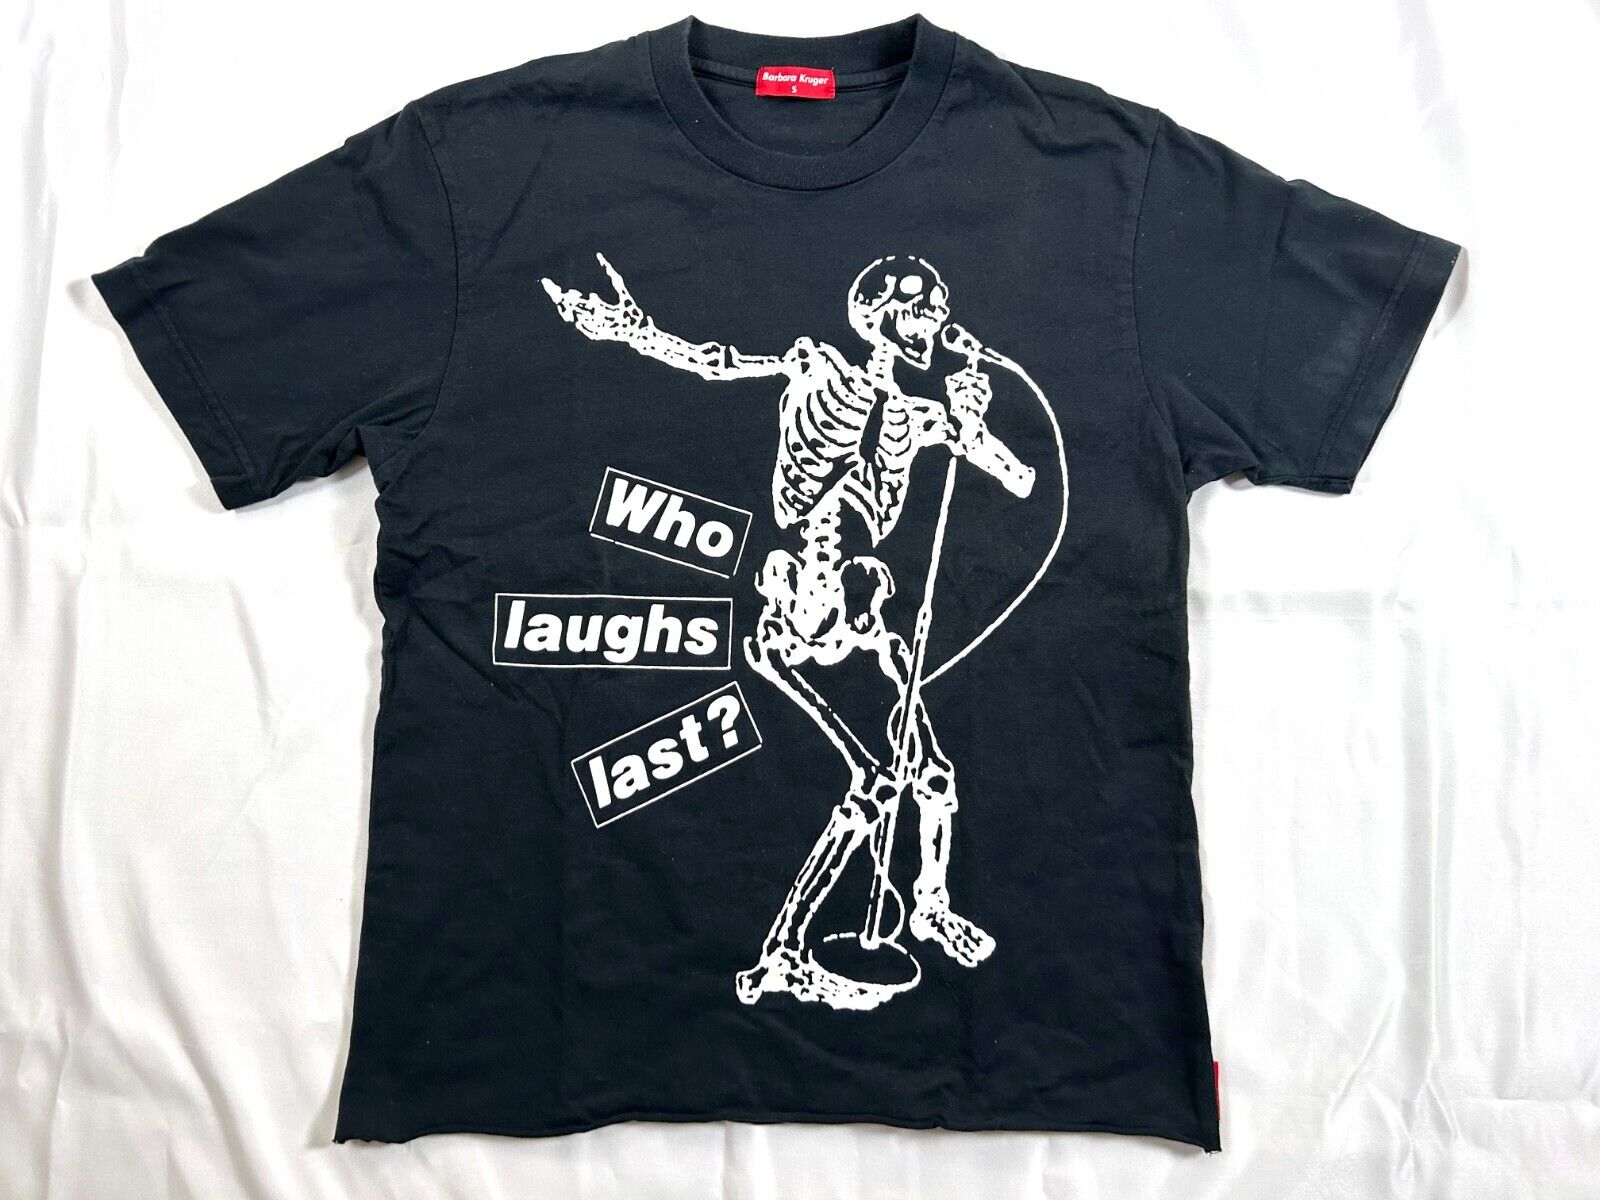 Barbara Kruger Artwork Print T shirt Black S for Men Y2K UNIQLO from Japan